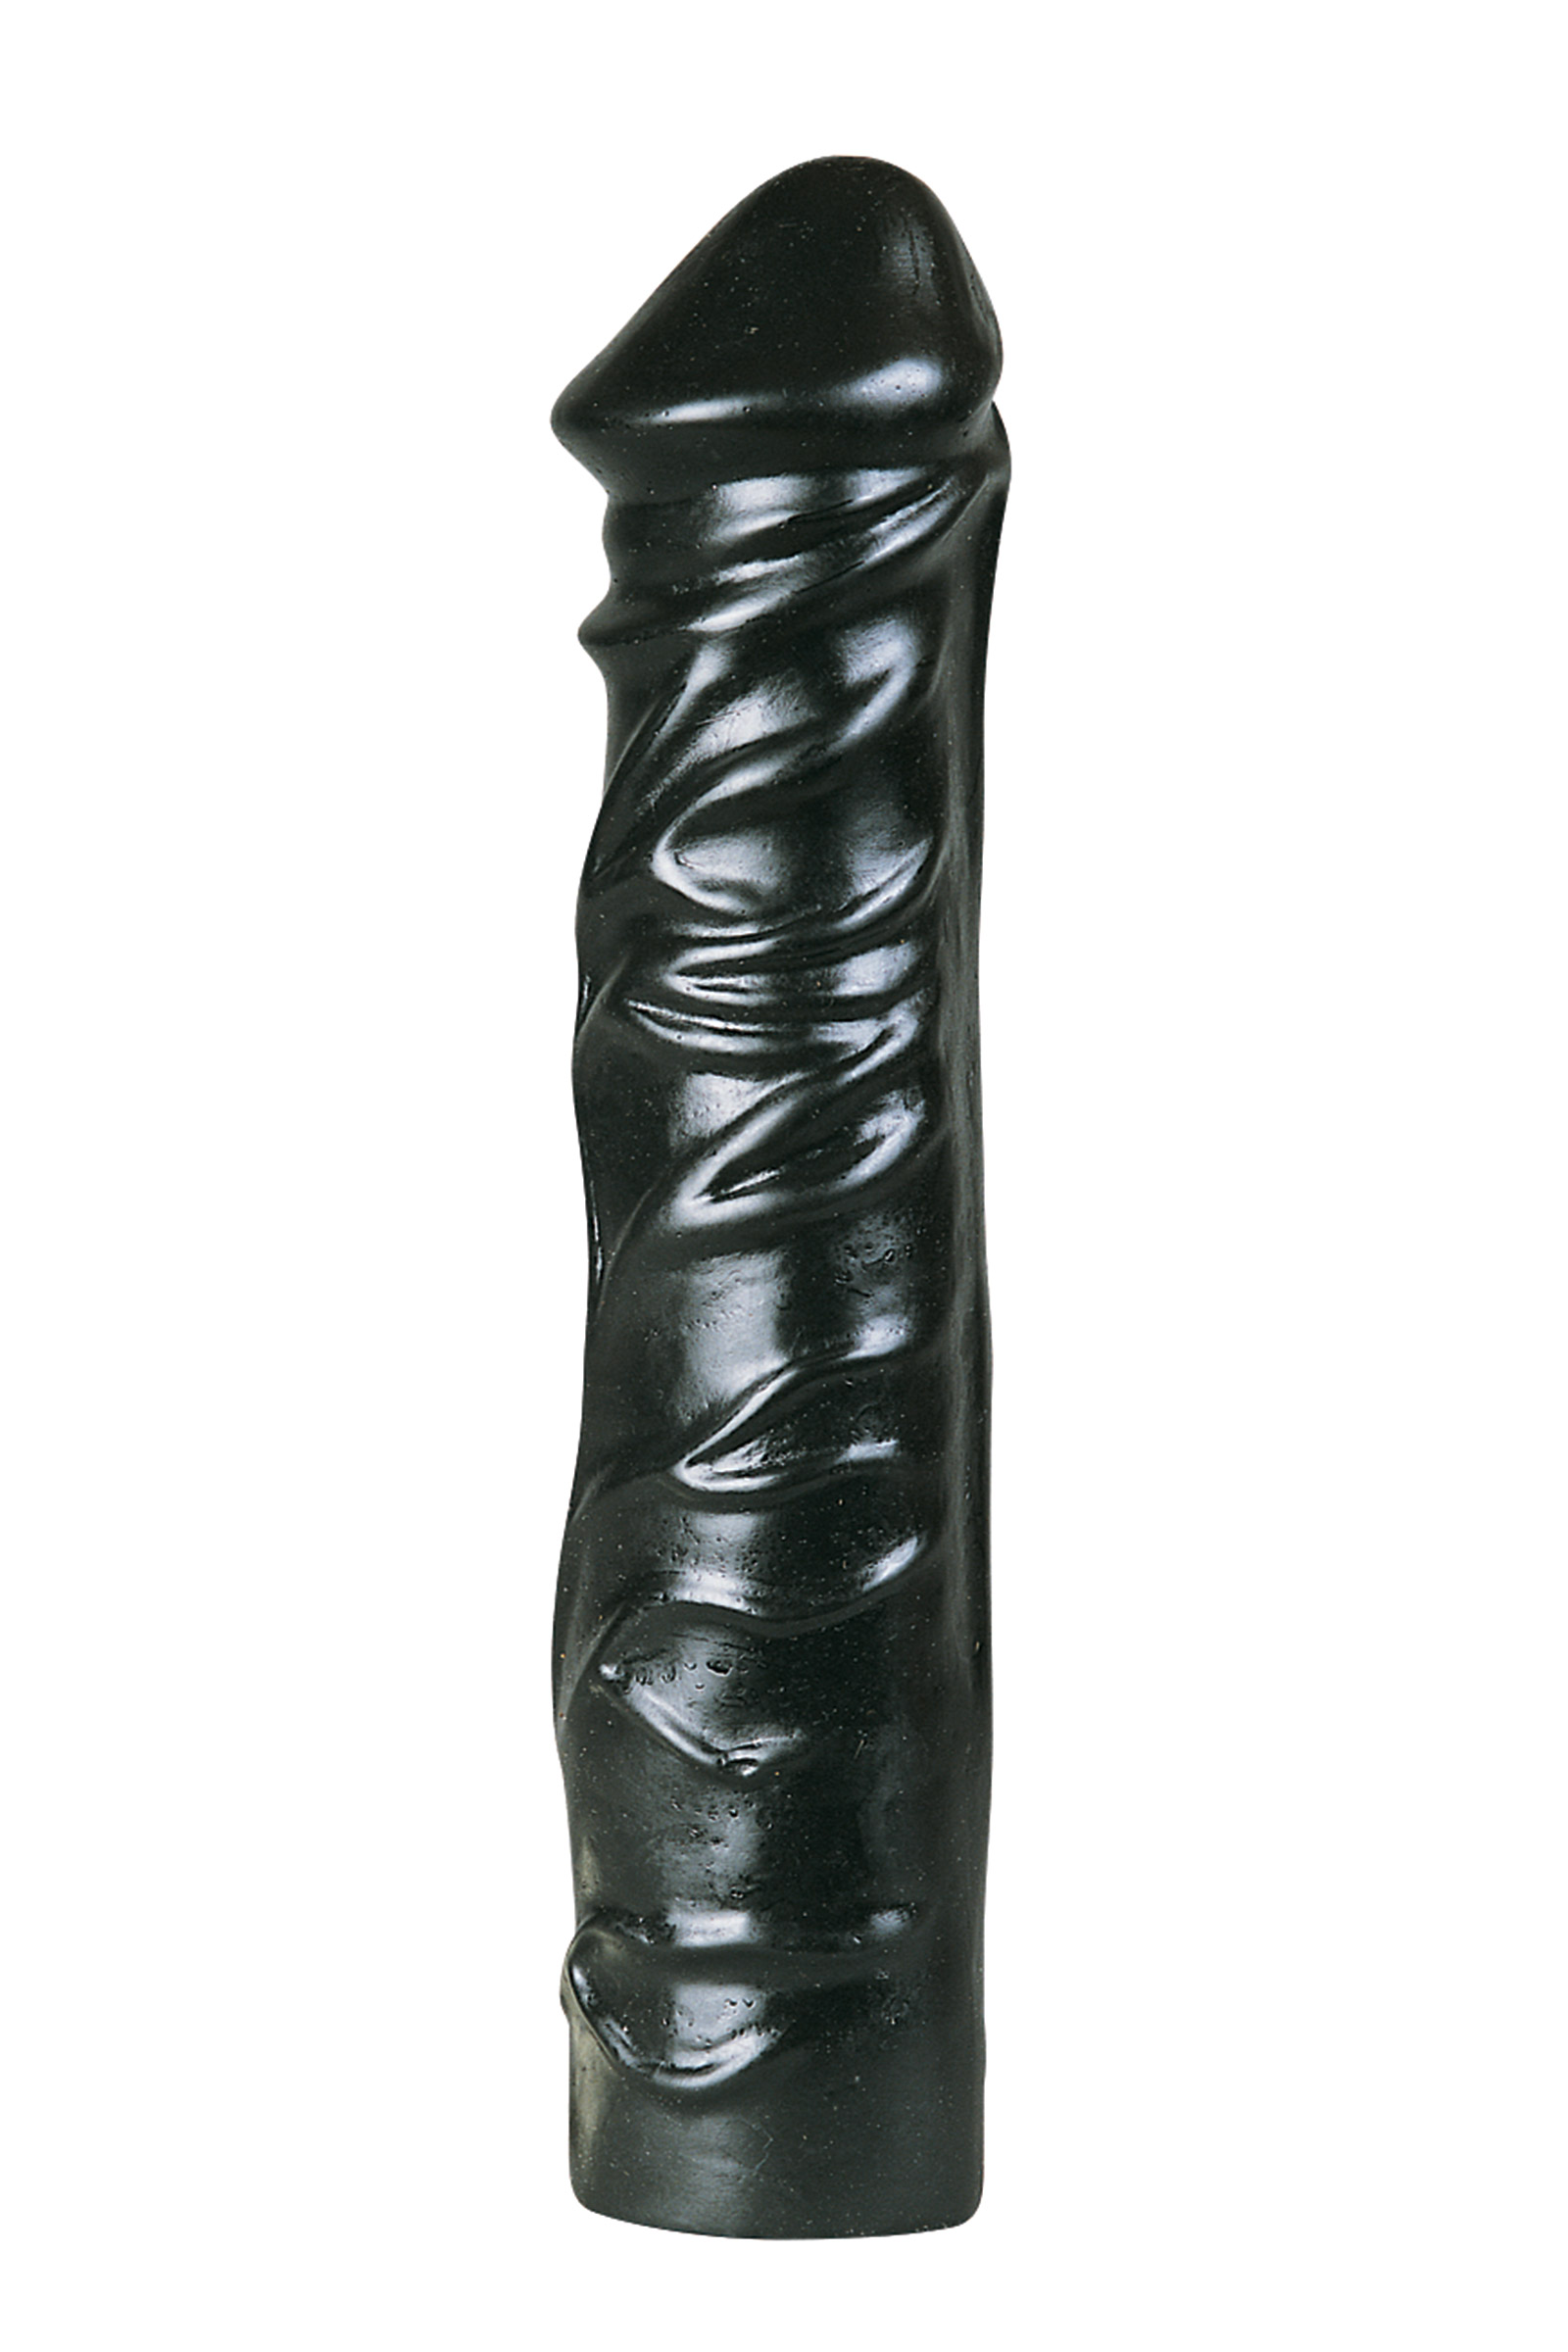 All Black Crni silikonski dildo 32 cm 580236 / 7687